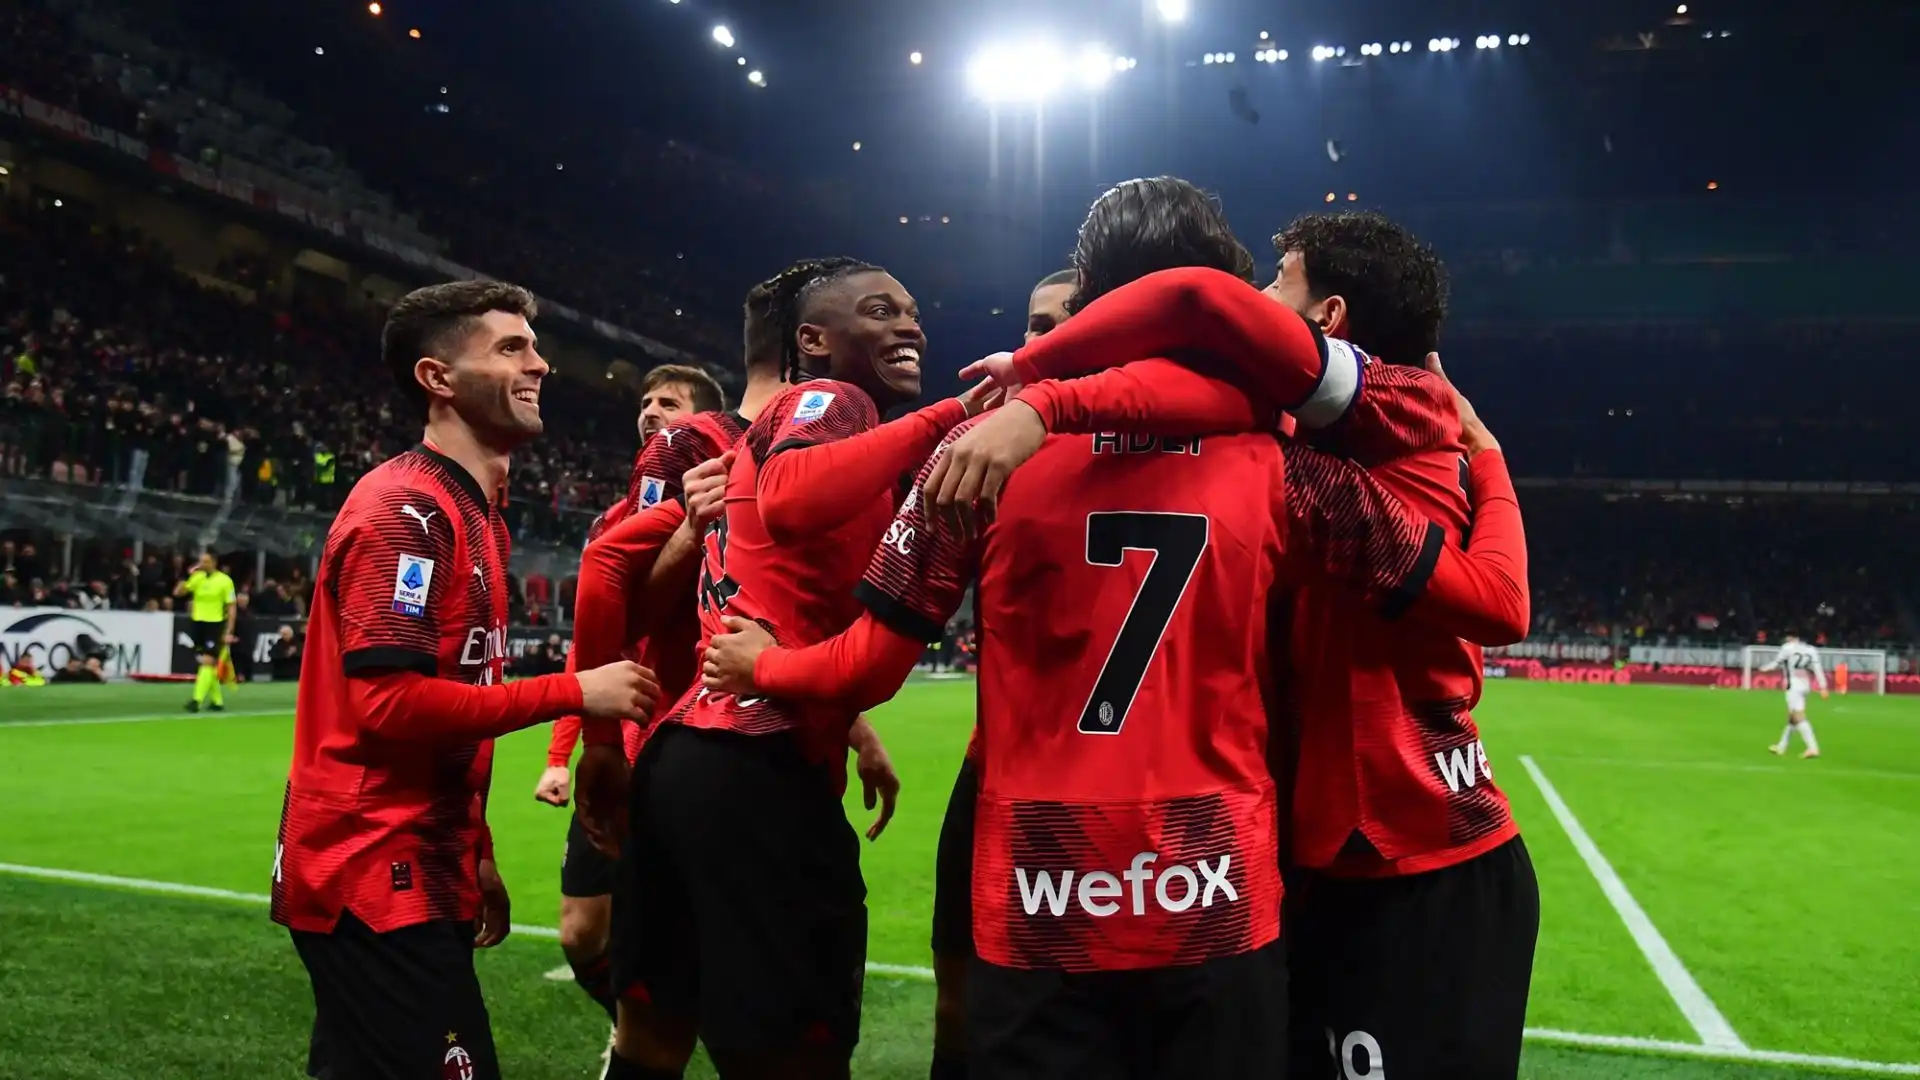 Il Milan è in lotta per la Champions League: "Abbiamo ancora tante sfide davanti e sono concentrato"